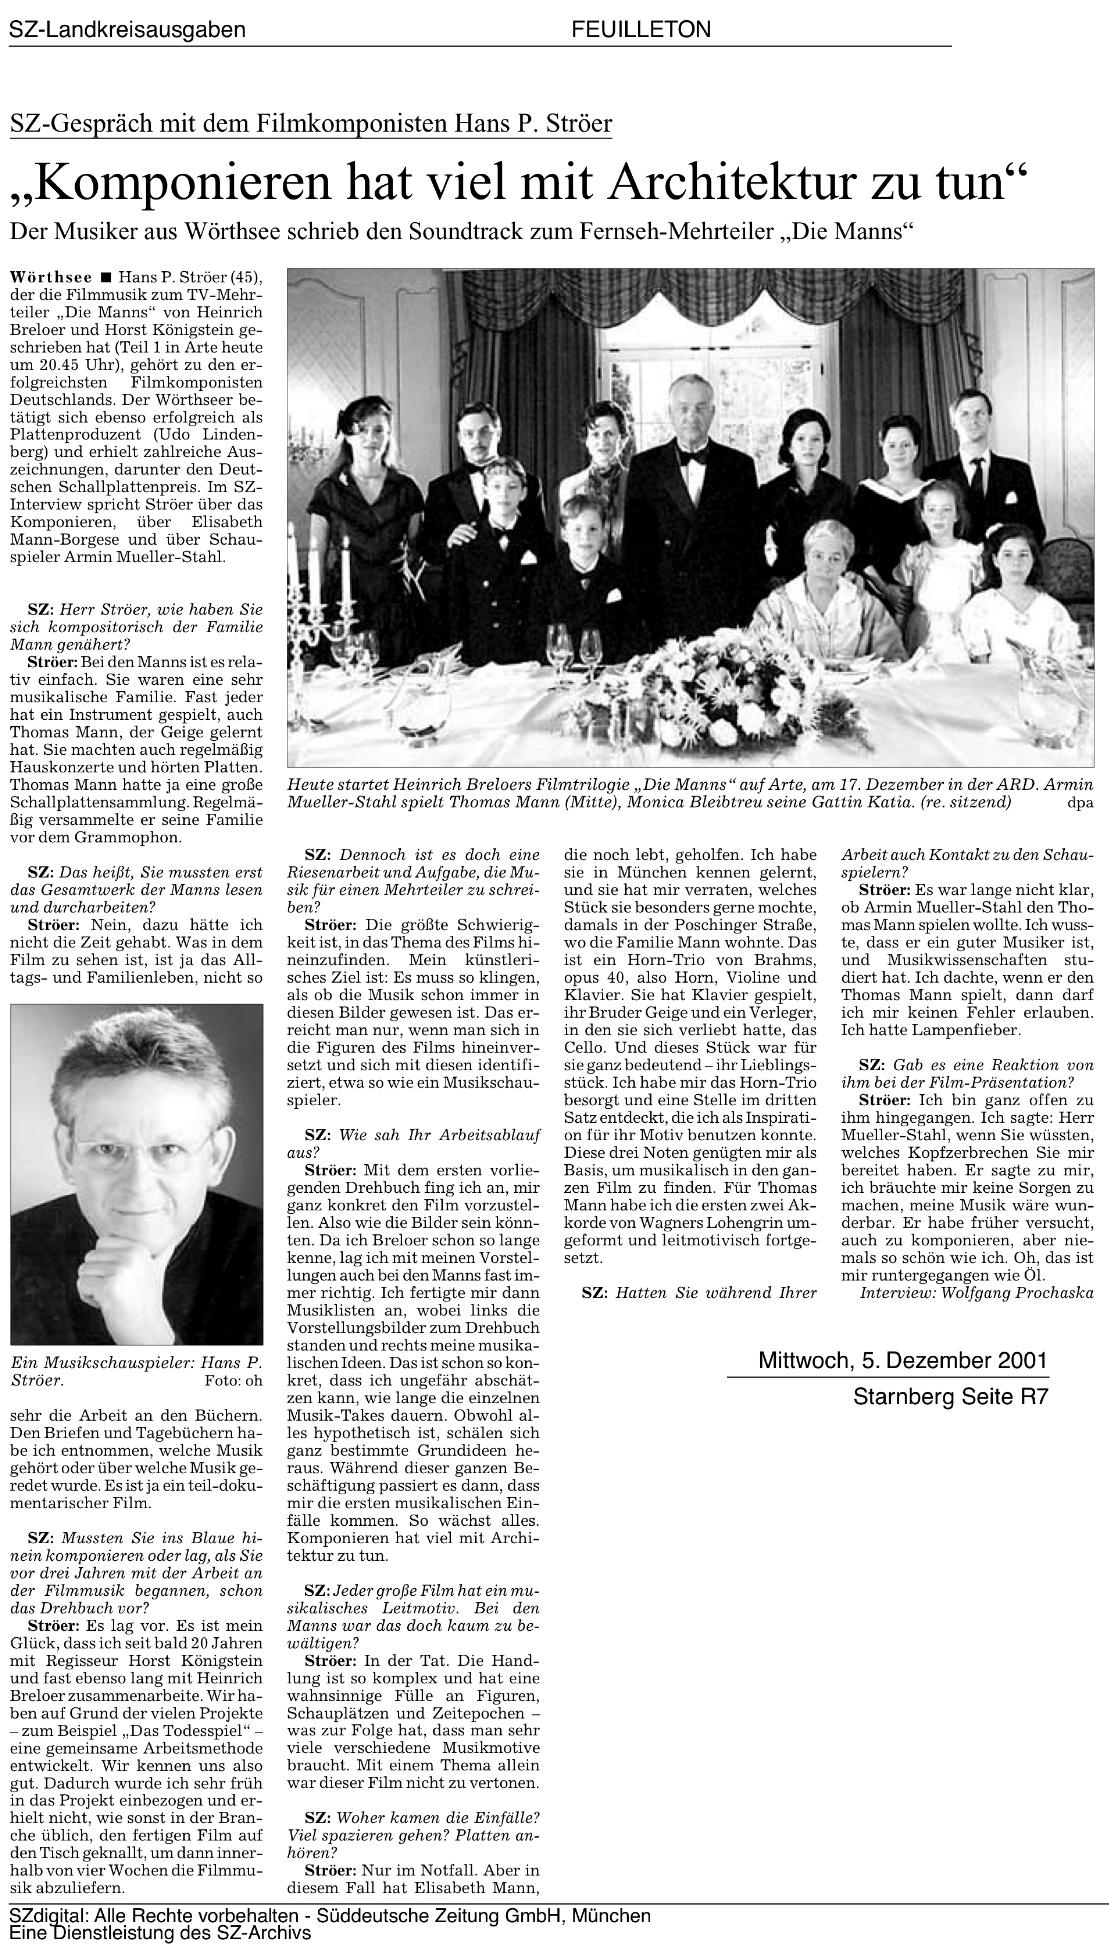 SZ-Gespräch mit H.P. Ströer über "Die Manns" 2001